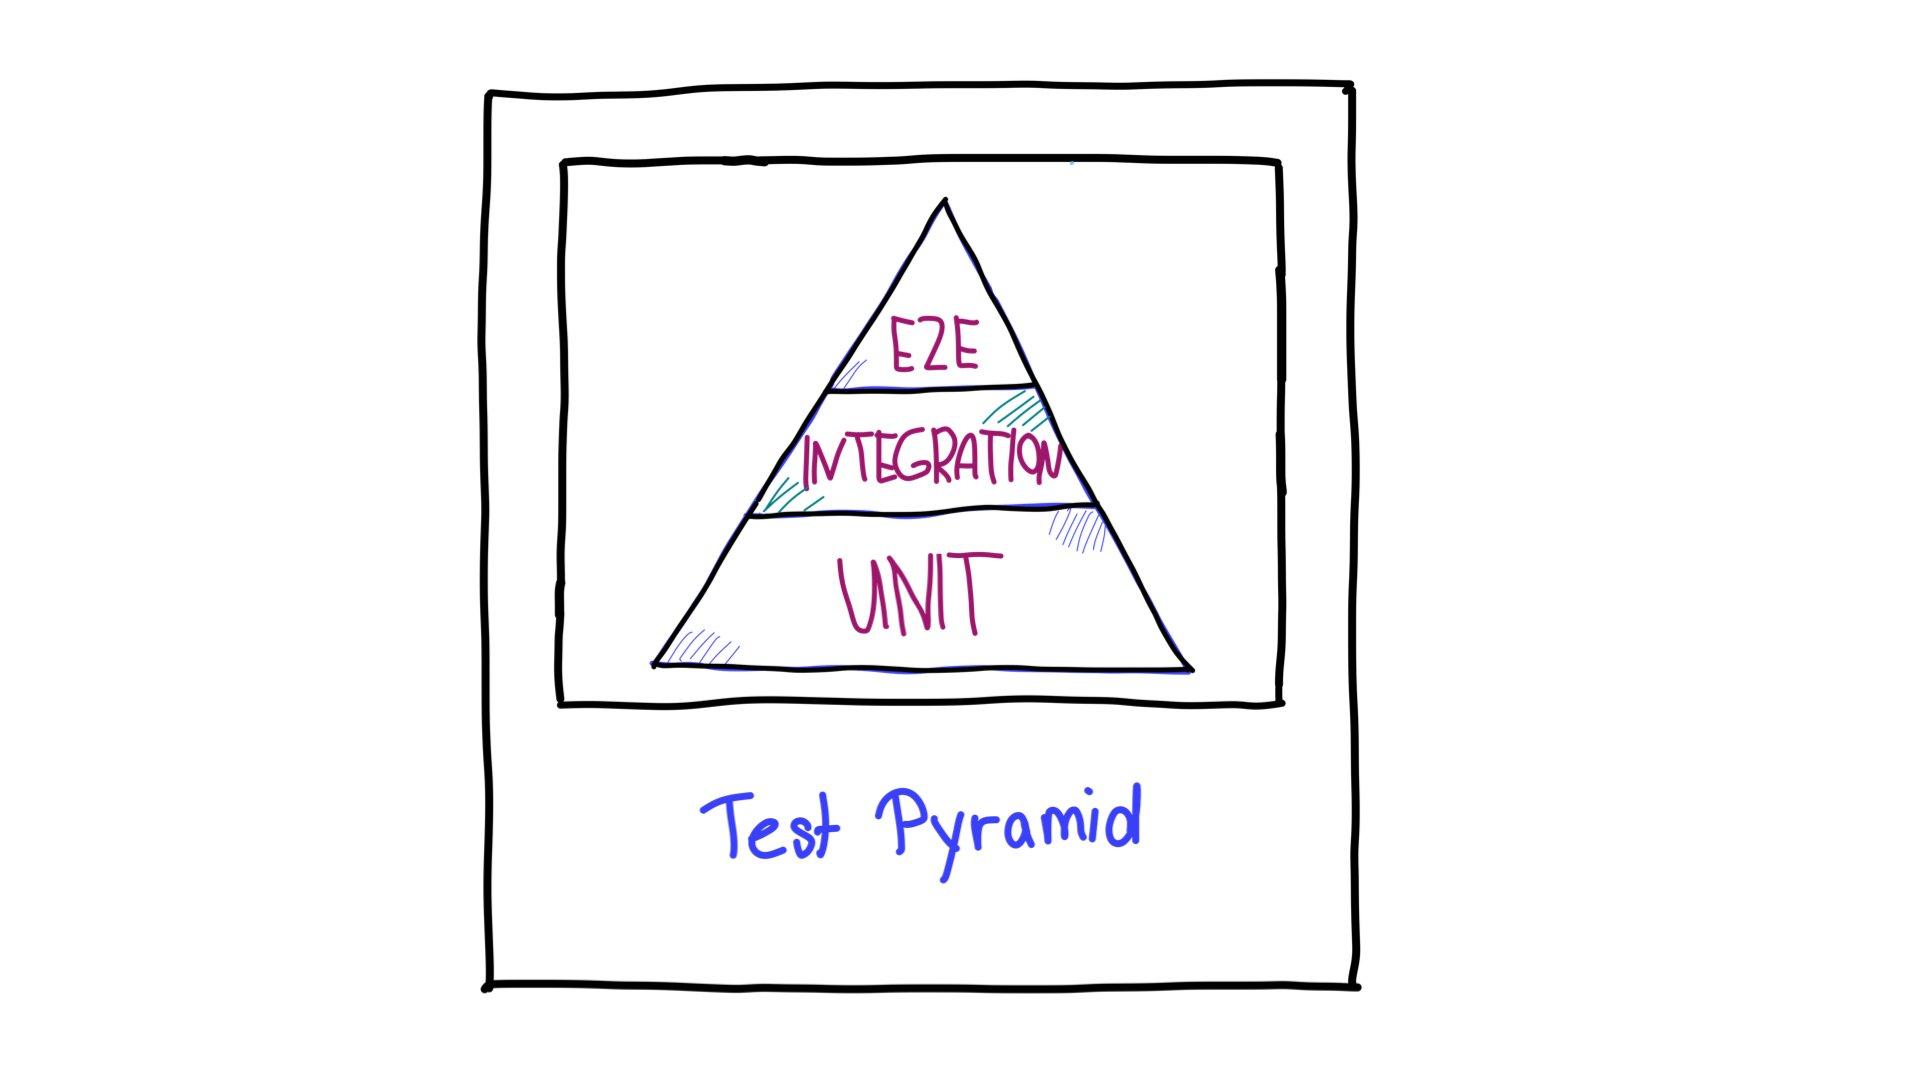 Пирамида тестирования со сквозными (E2E) тестами наверху, интеграционными тестами посередине и модульными тестами внизу.